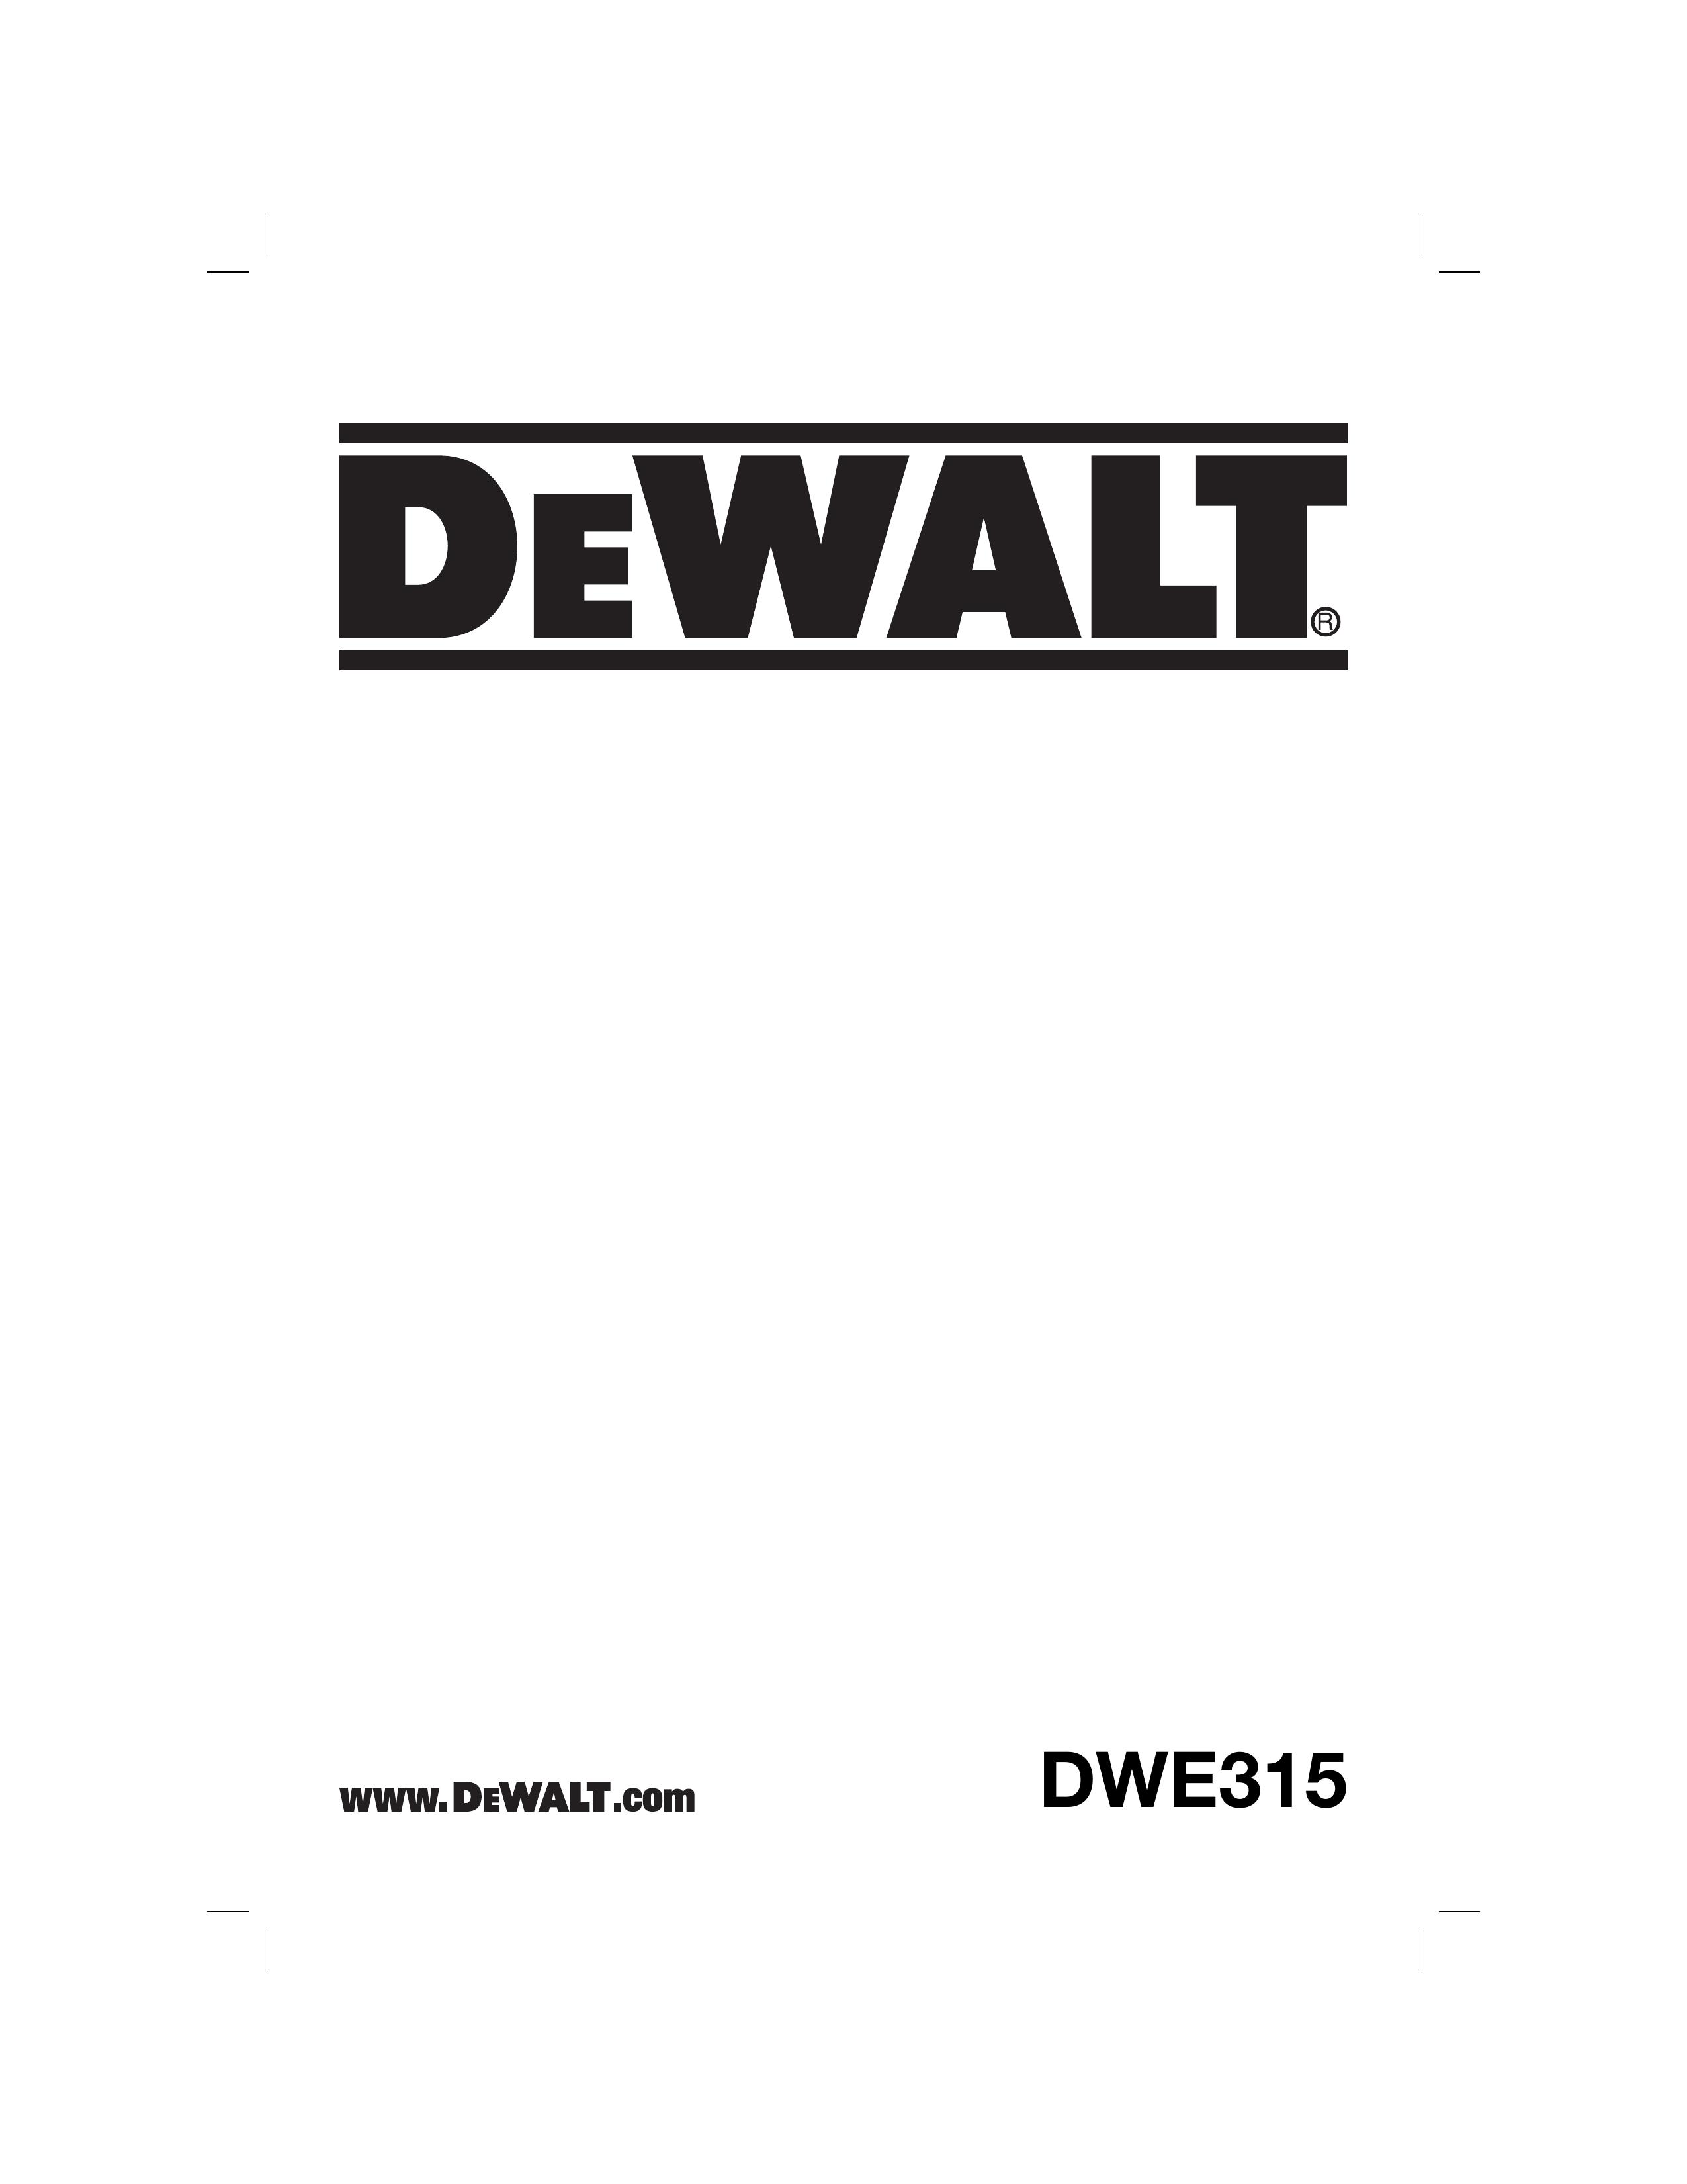 DeWalt DWE315K Lawn Mower Accessory User Manual